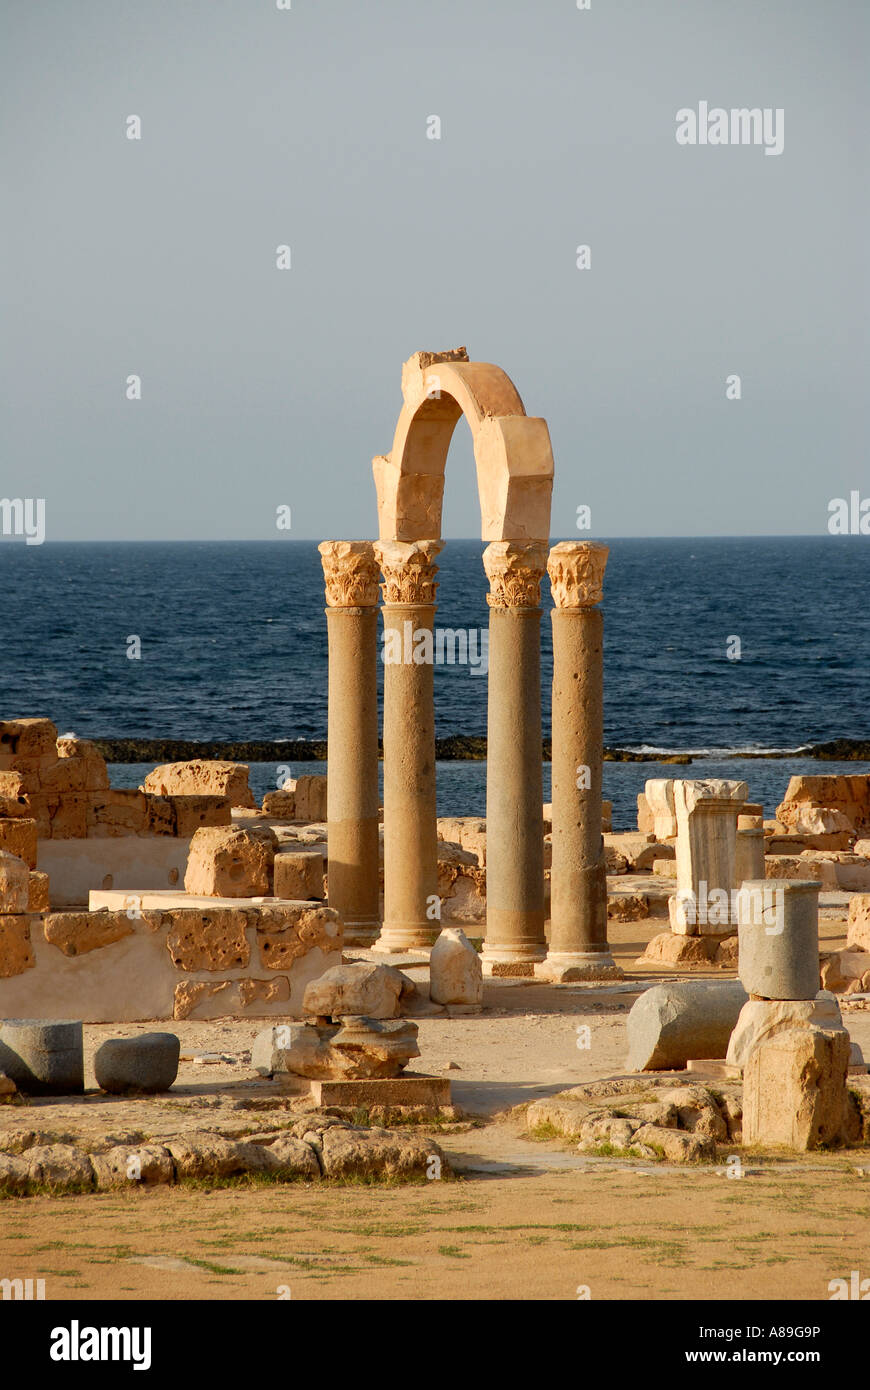 Pillars and arch at sea Sabratha Libya Stock Photo